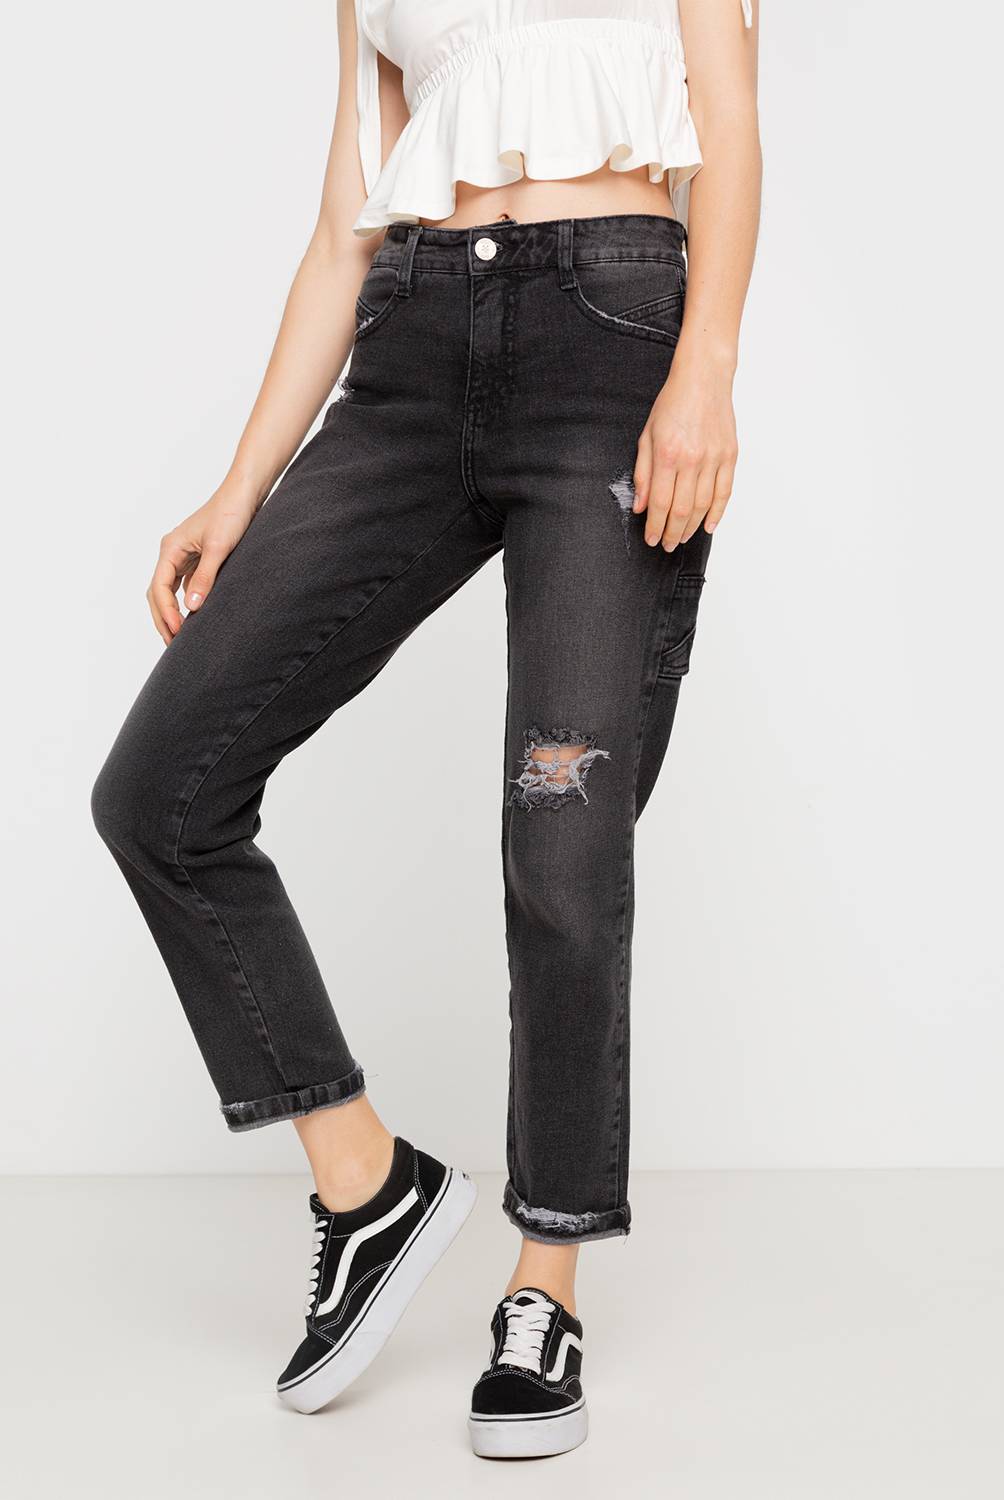 DINAMICA - Jeans de Algodón Skinny Mujer